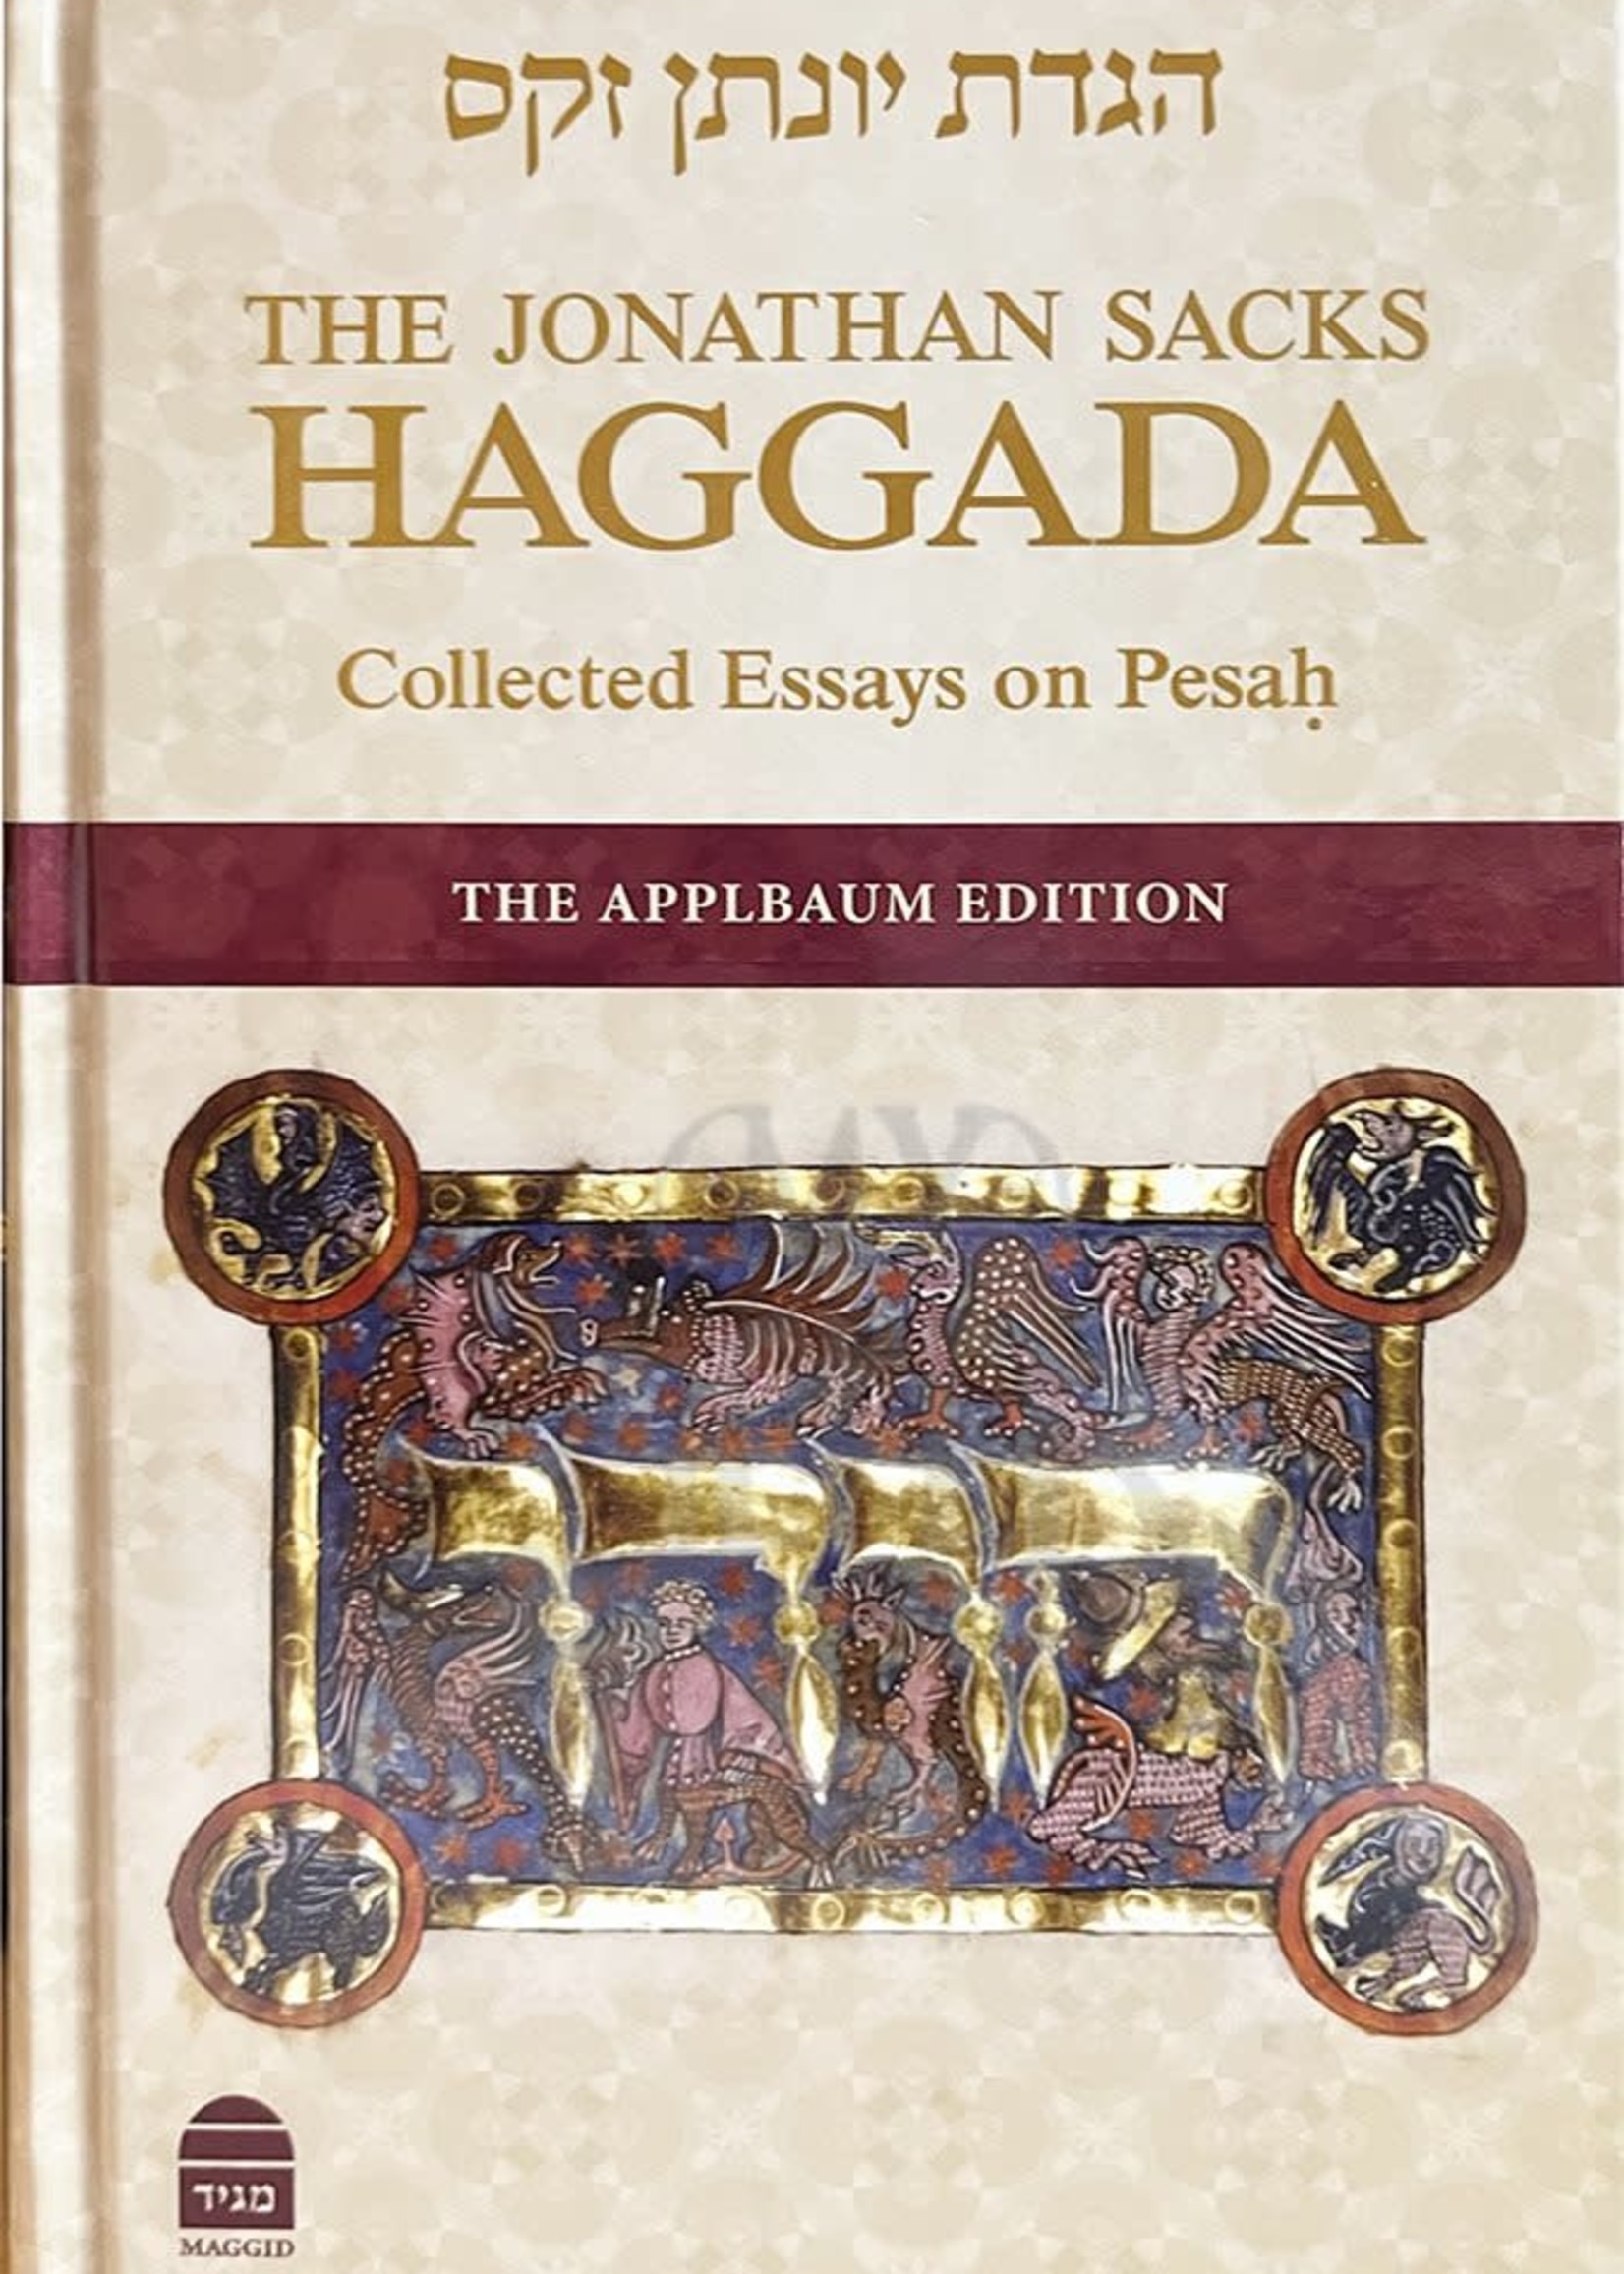 Rabbi Jonathan Sacks The Jonathan Sacks Haggadah - Collected Essays on Pesach